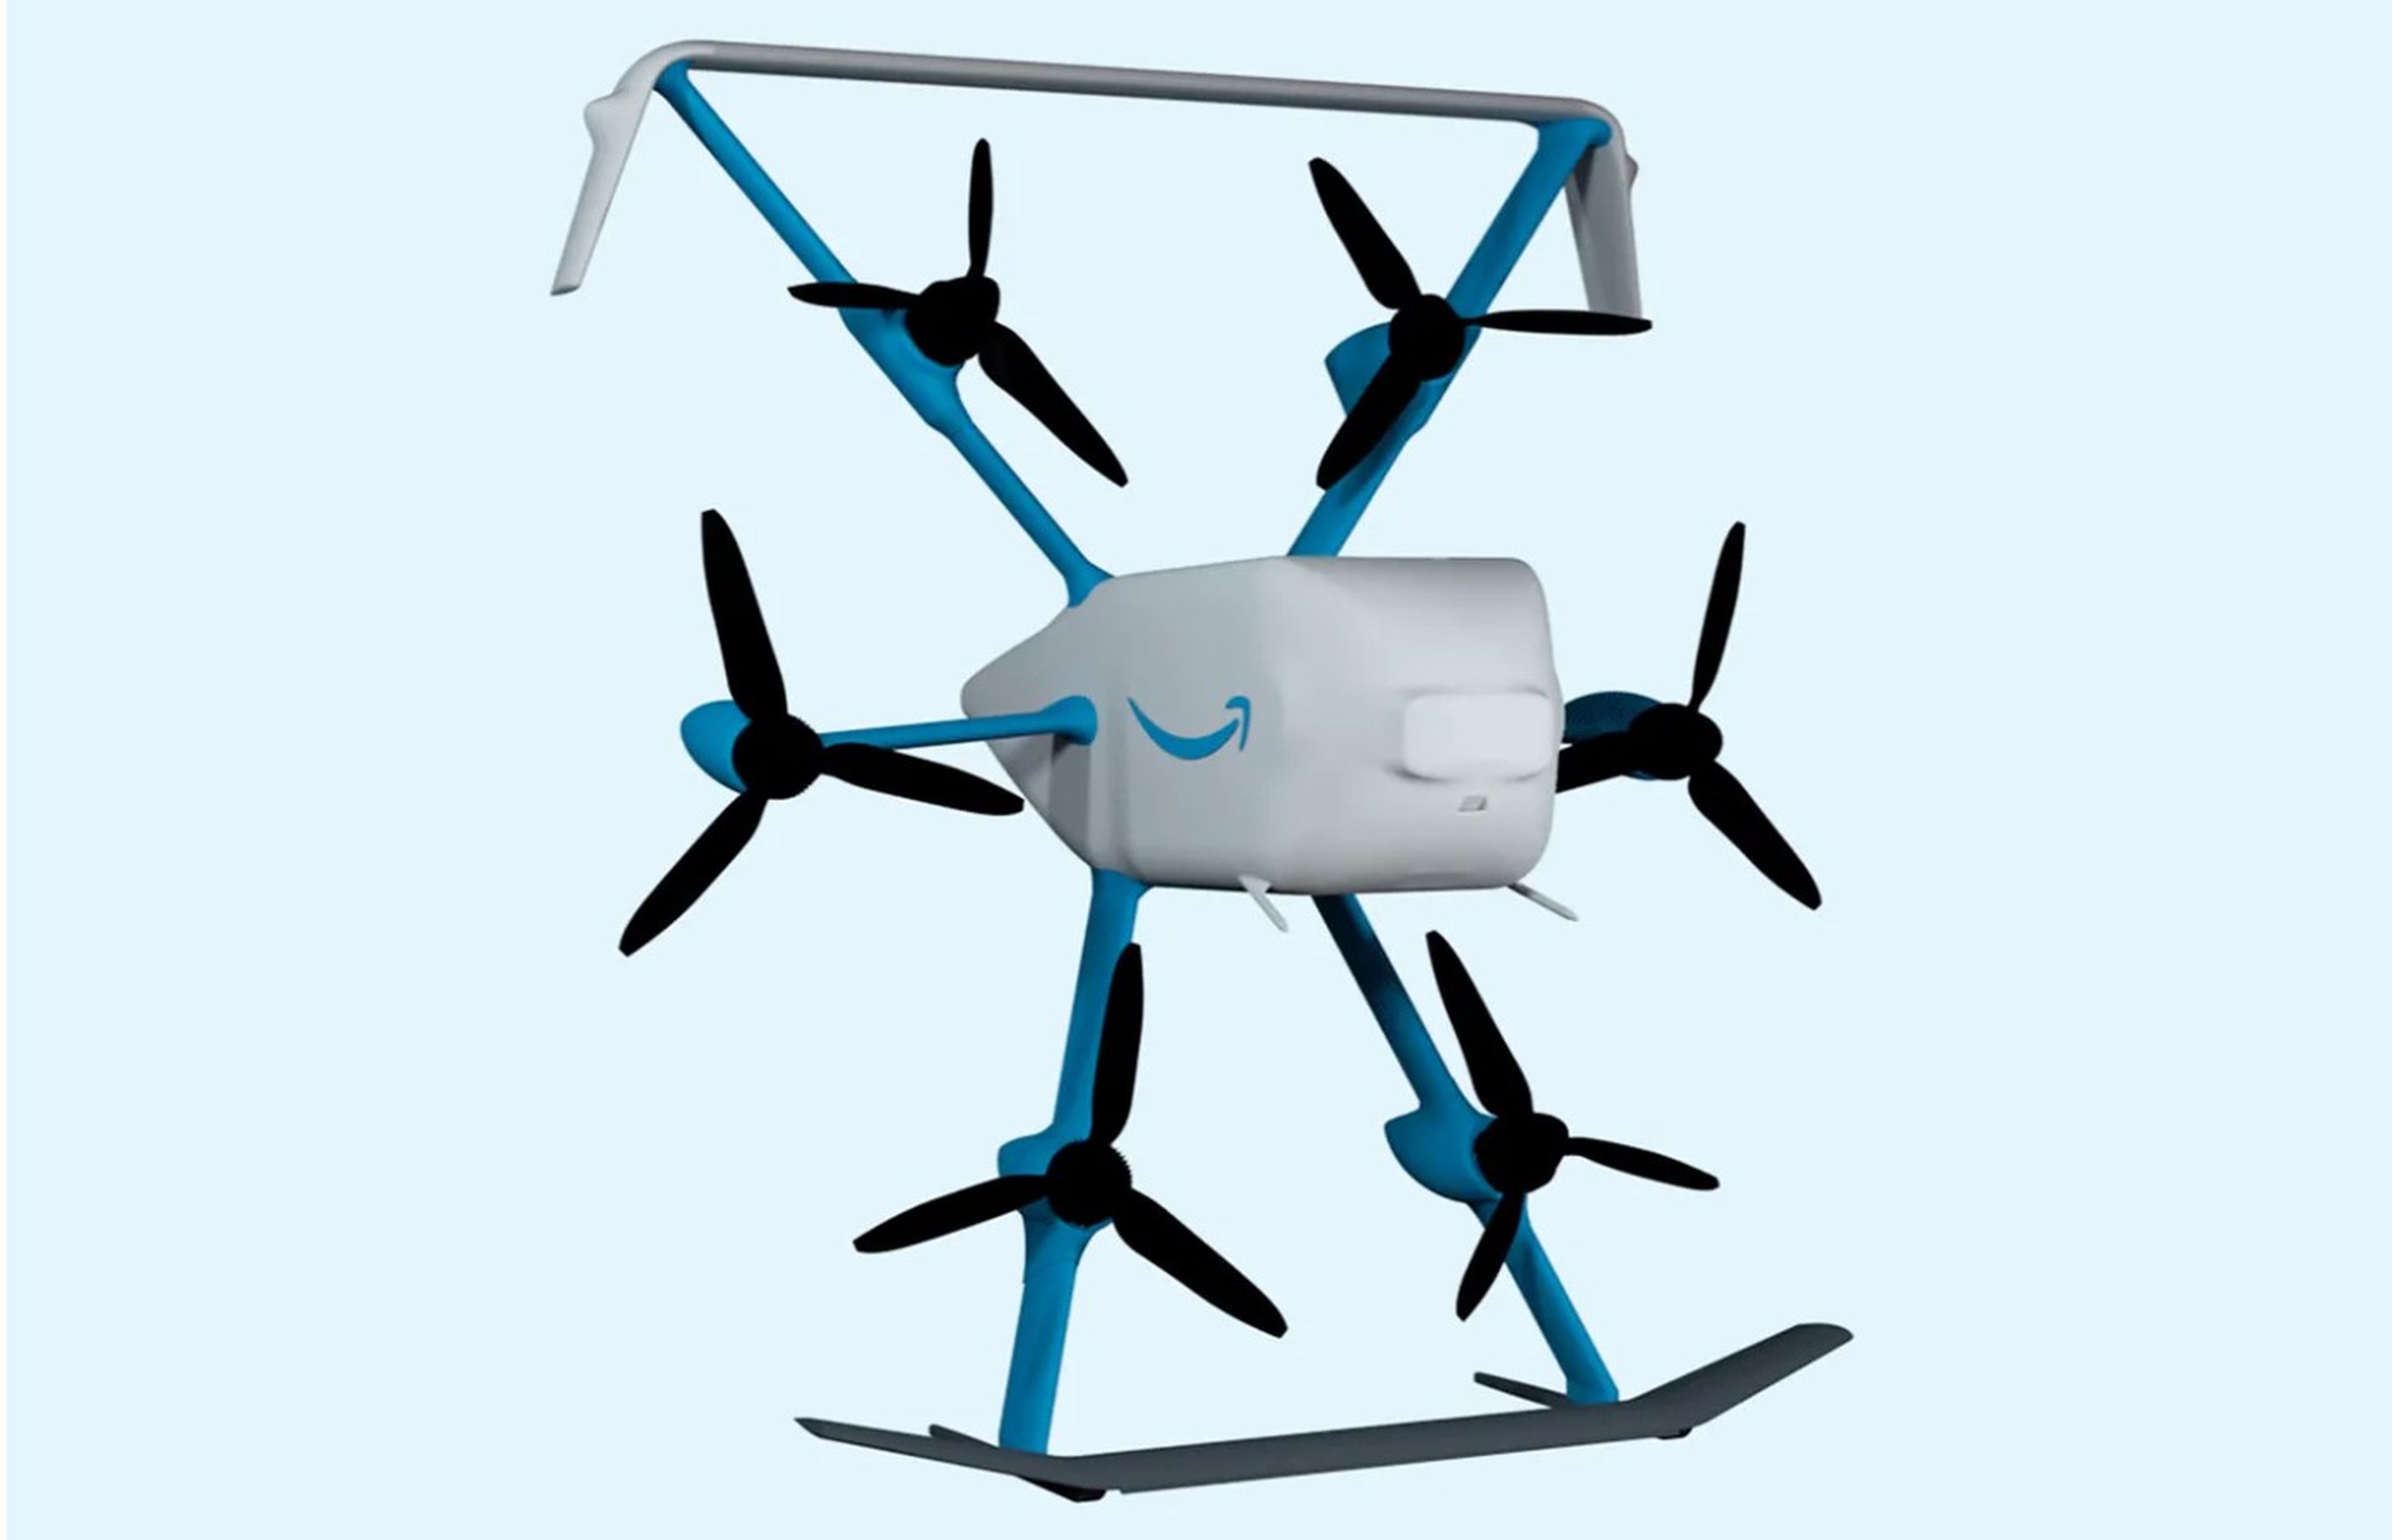 Así es el último dron de reparto de Amazon